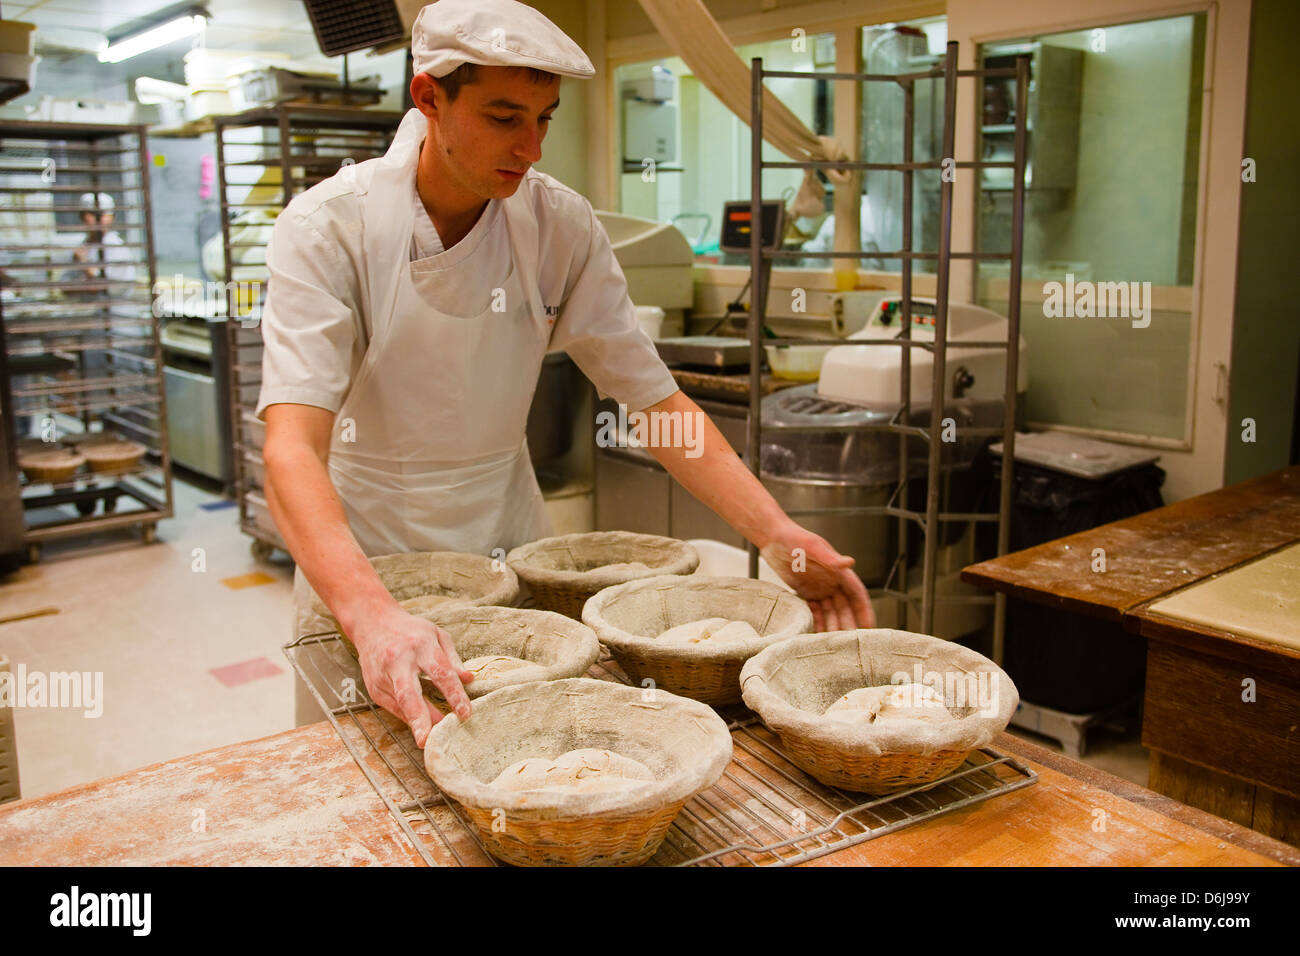 Le boulanger prépare la pâte prêtes à être transformées en pain, Tours, Indre-et-Loire, France, Europe Banque D'Images